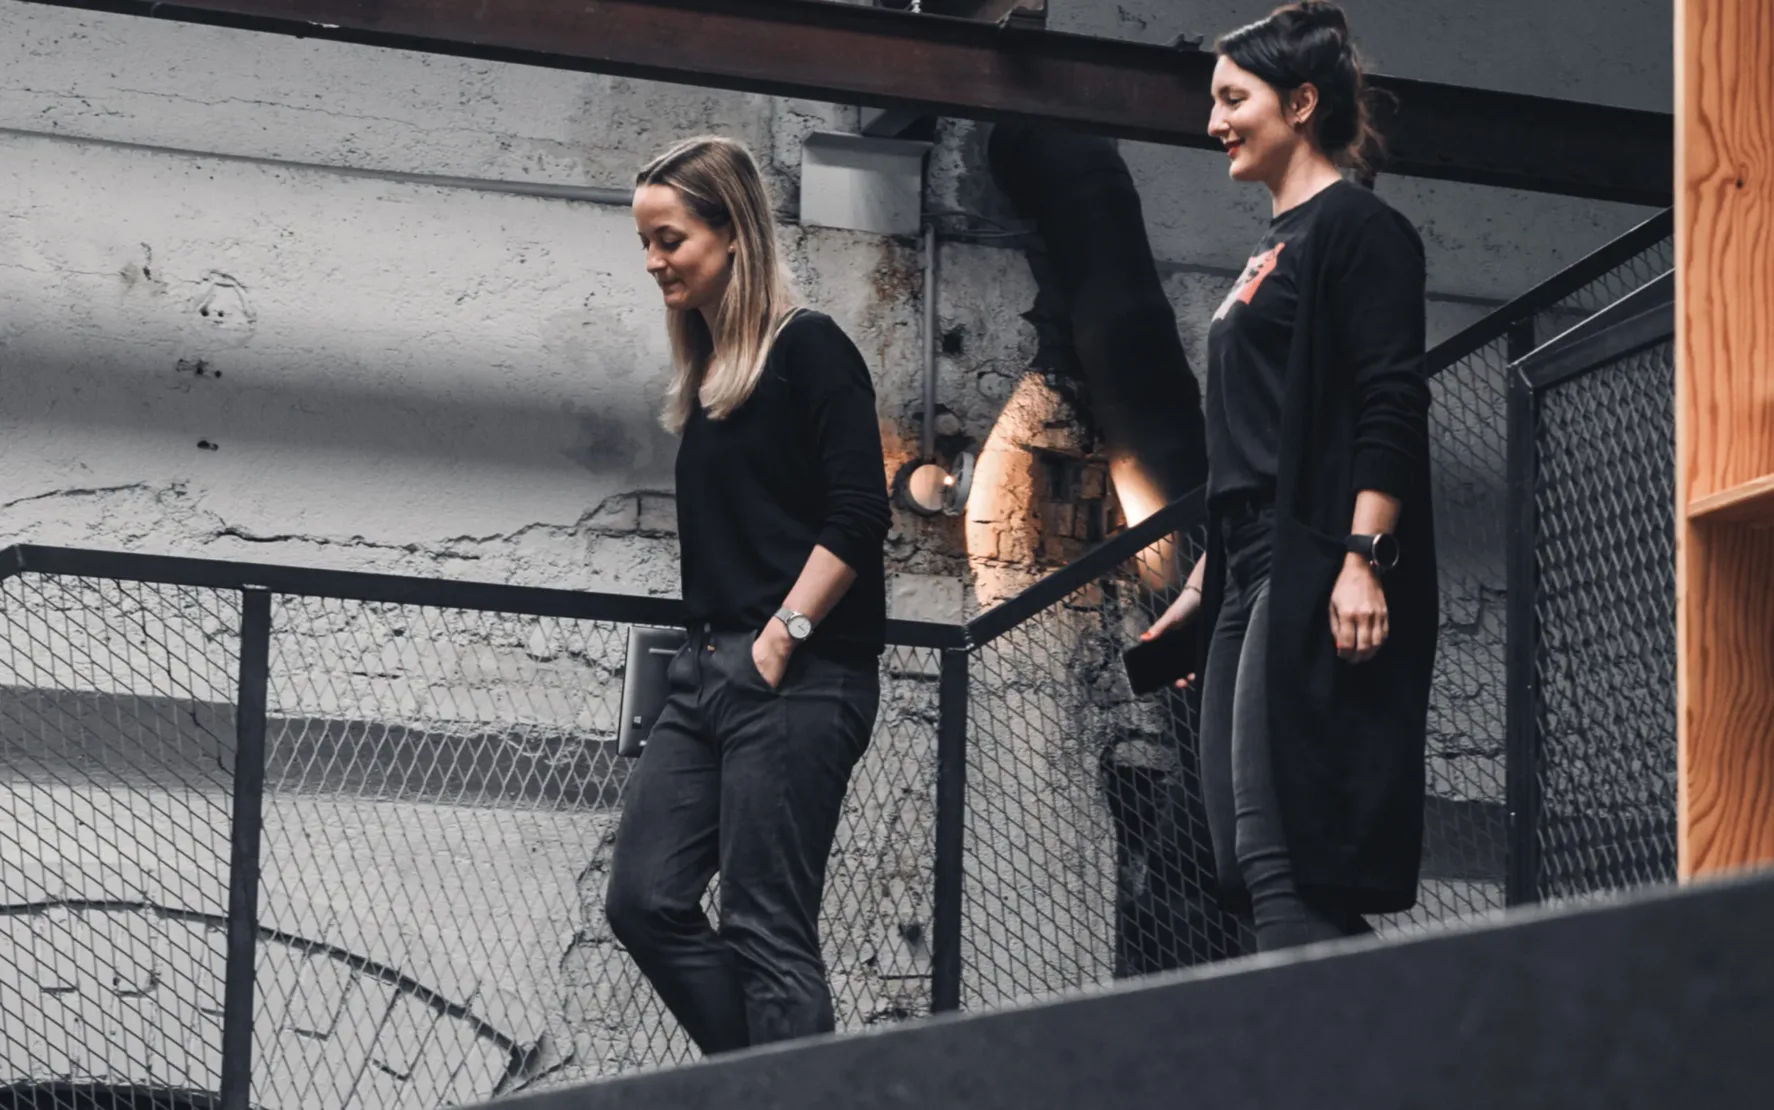 Zwei valantic Austria Mitarbeiterinnen gehen eine Trappe hinunter.